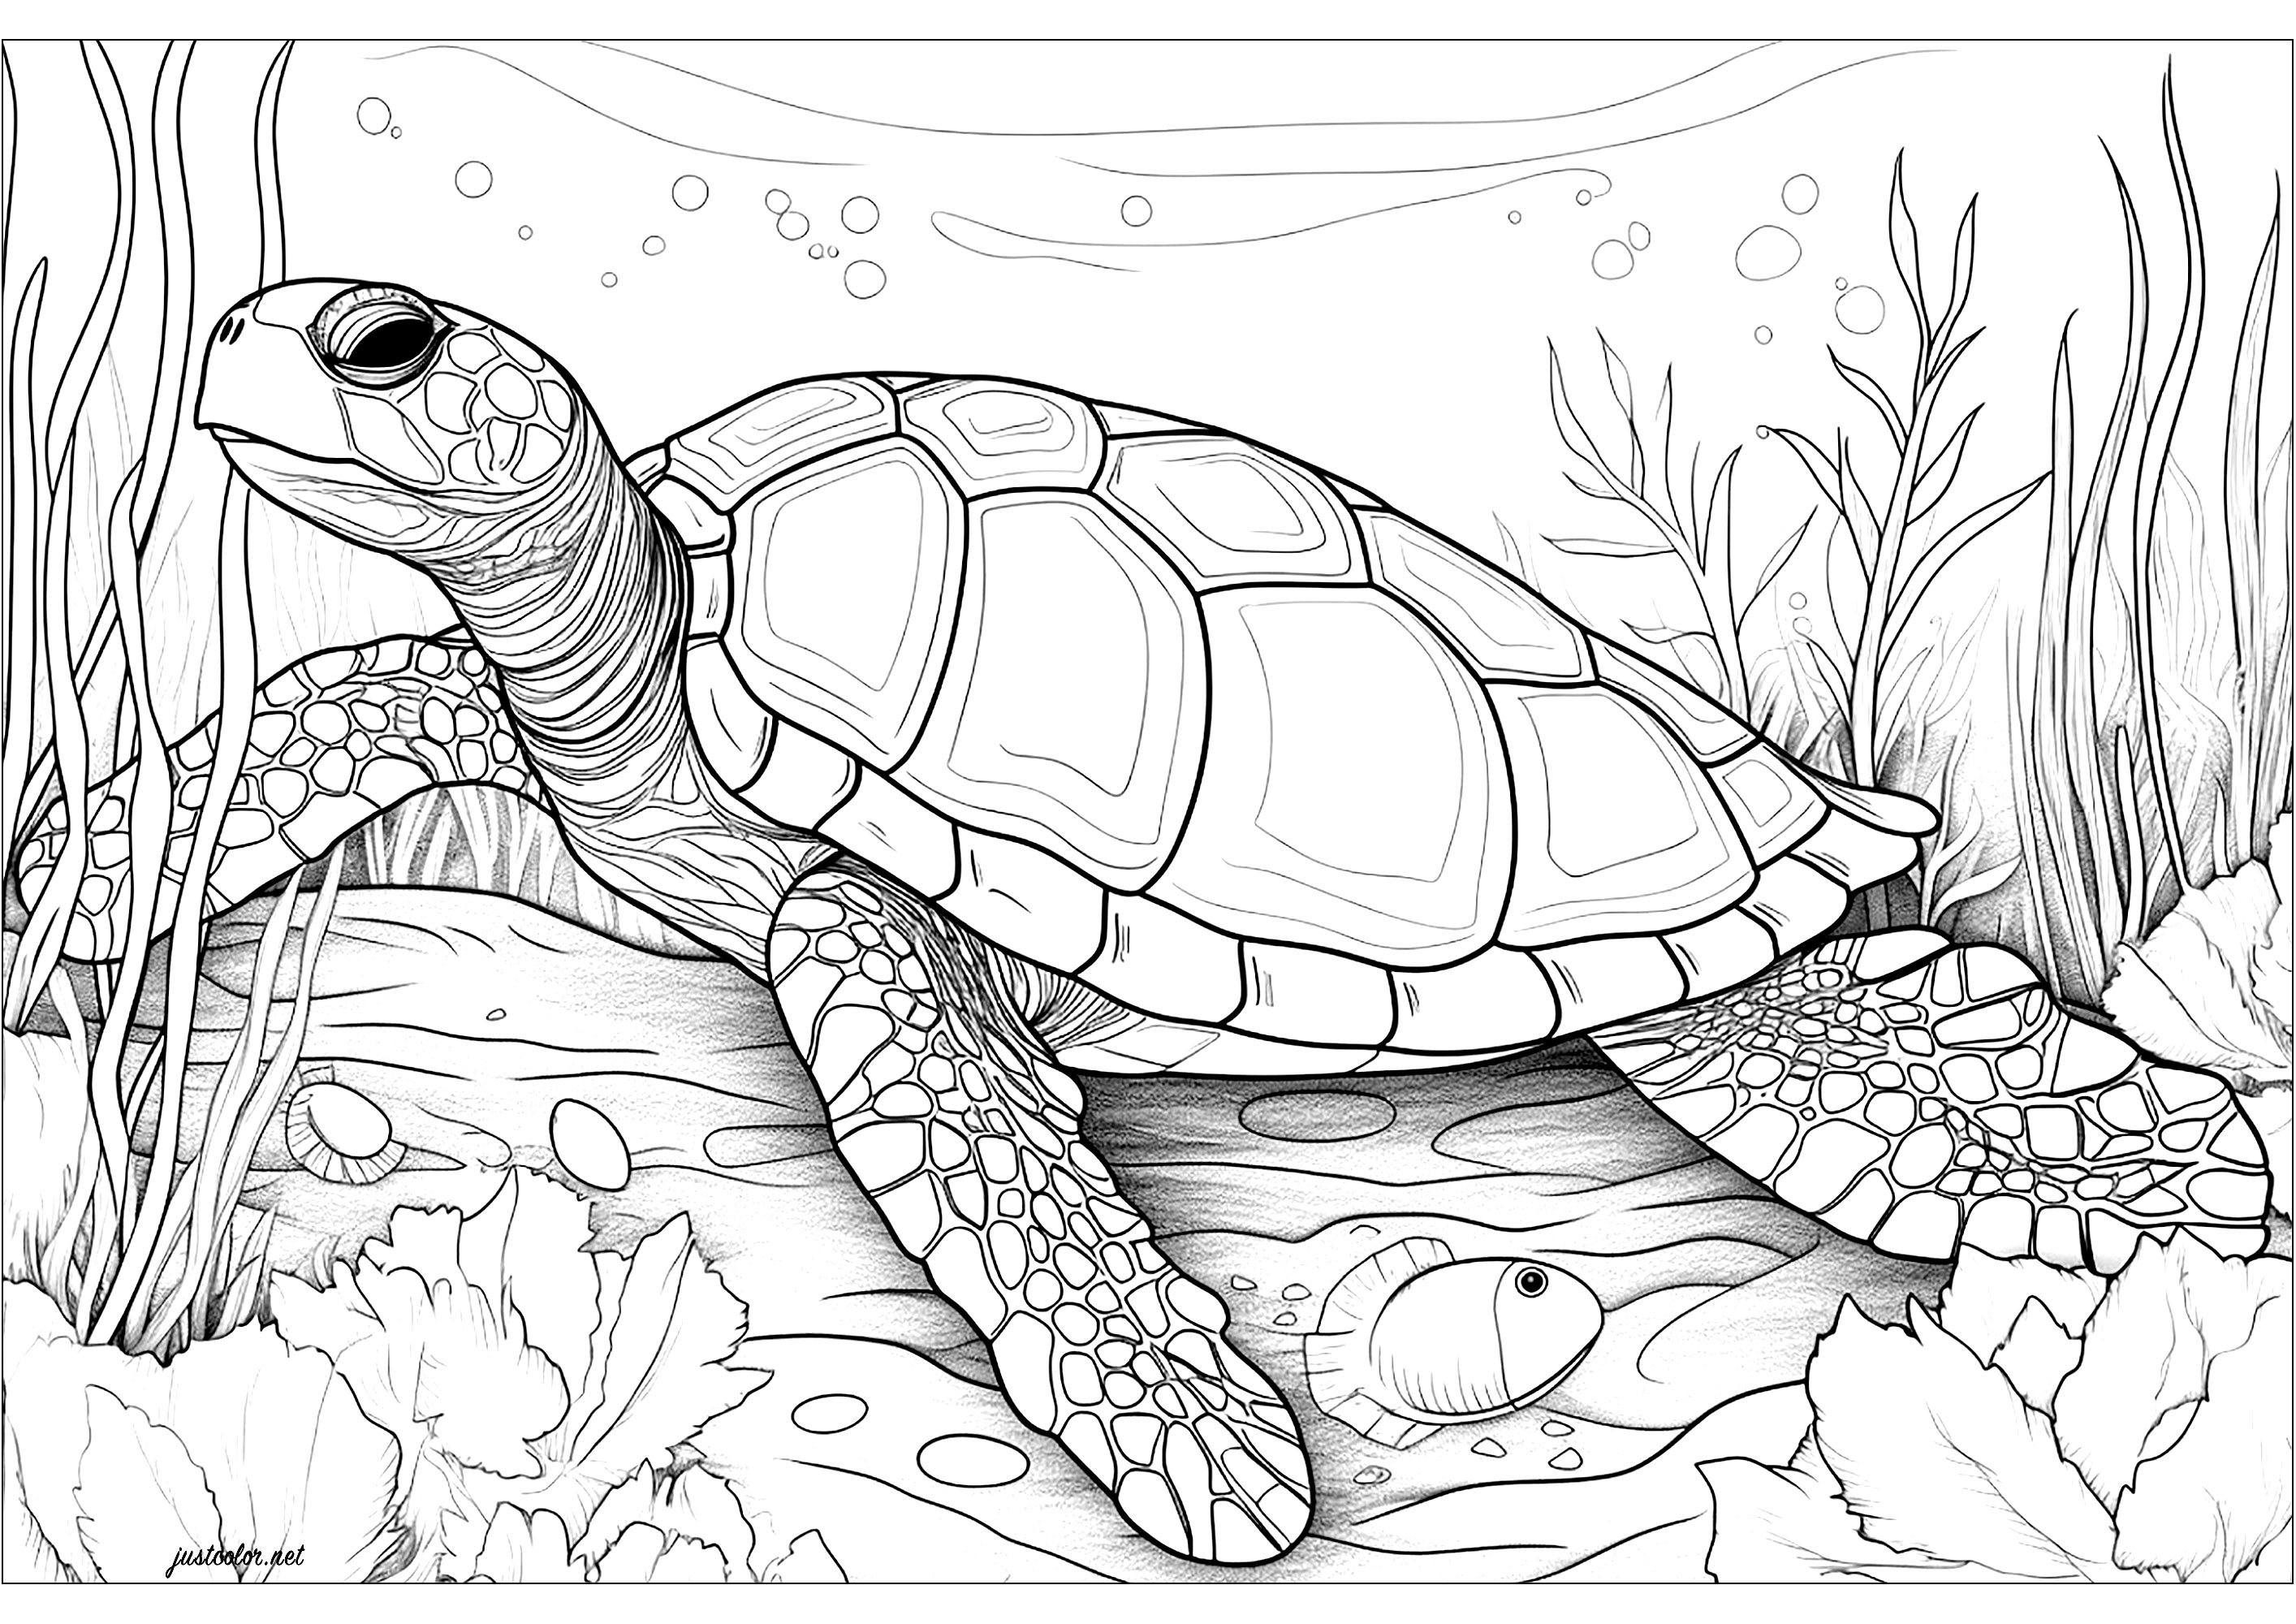 Grande tortue des mers. Une tortue marine très réaliste, à vous de coloriez les détails de sa carapace et ses écailles. Le fond de l'image est rempli de bulles et d'éléments végétaux aquatiques qui donnent à ce coloriage une atmosphère de calme et de sérénité.